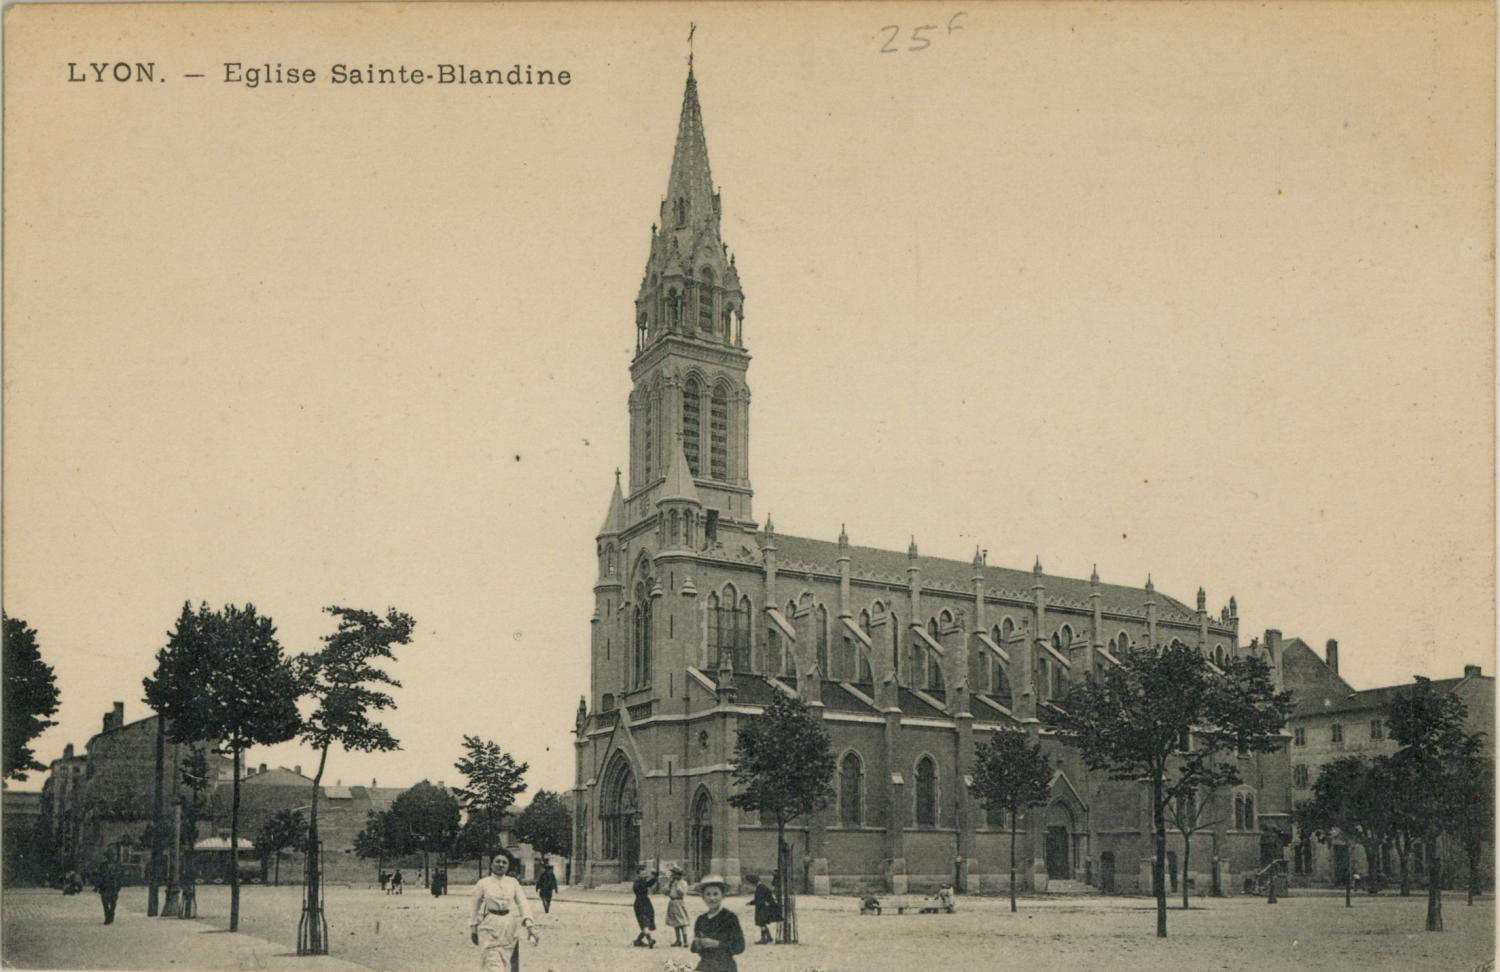 Lyon. - Eglise Sainte-Blandine